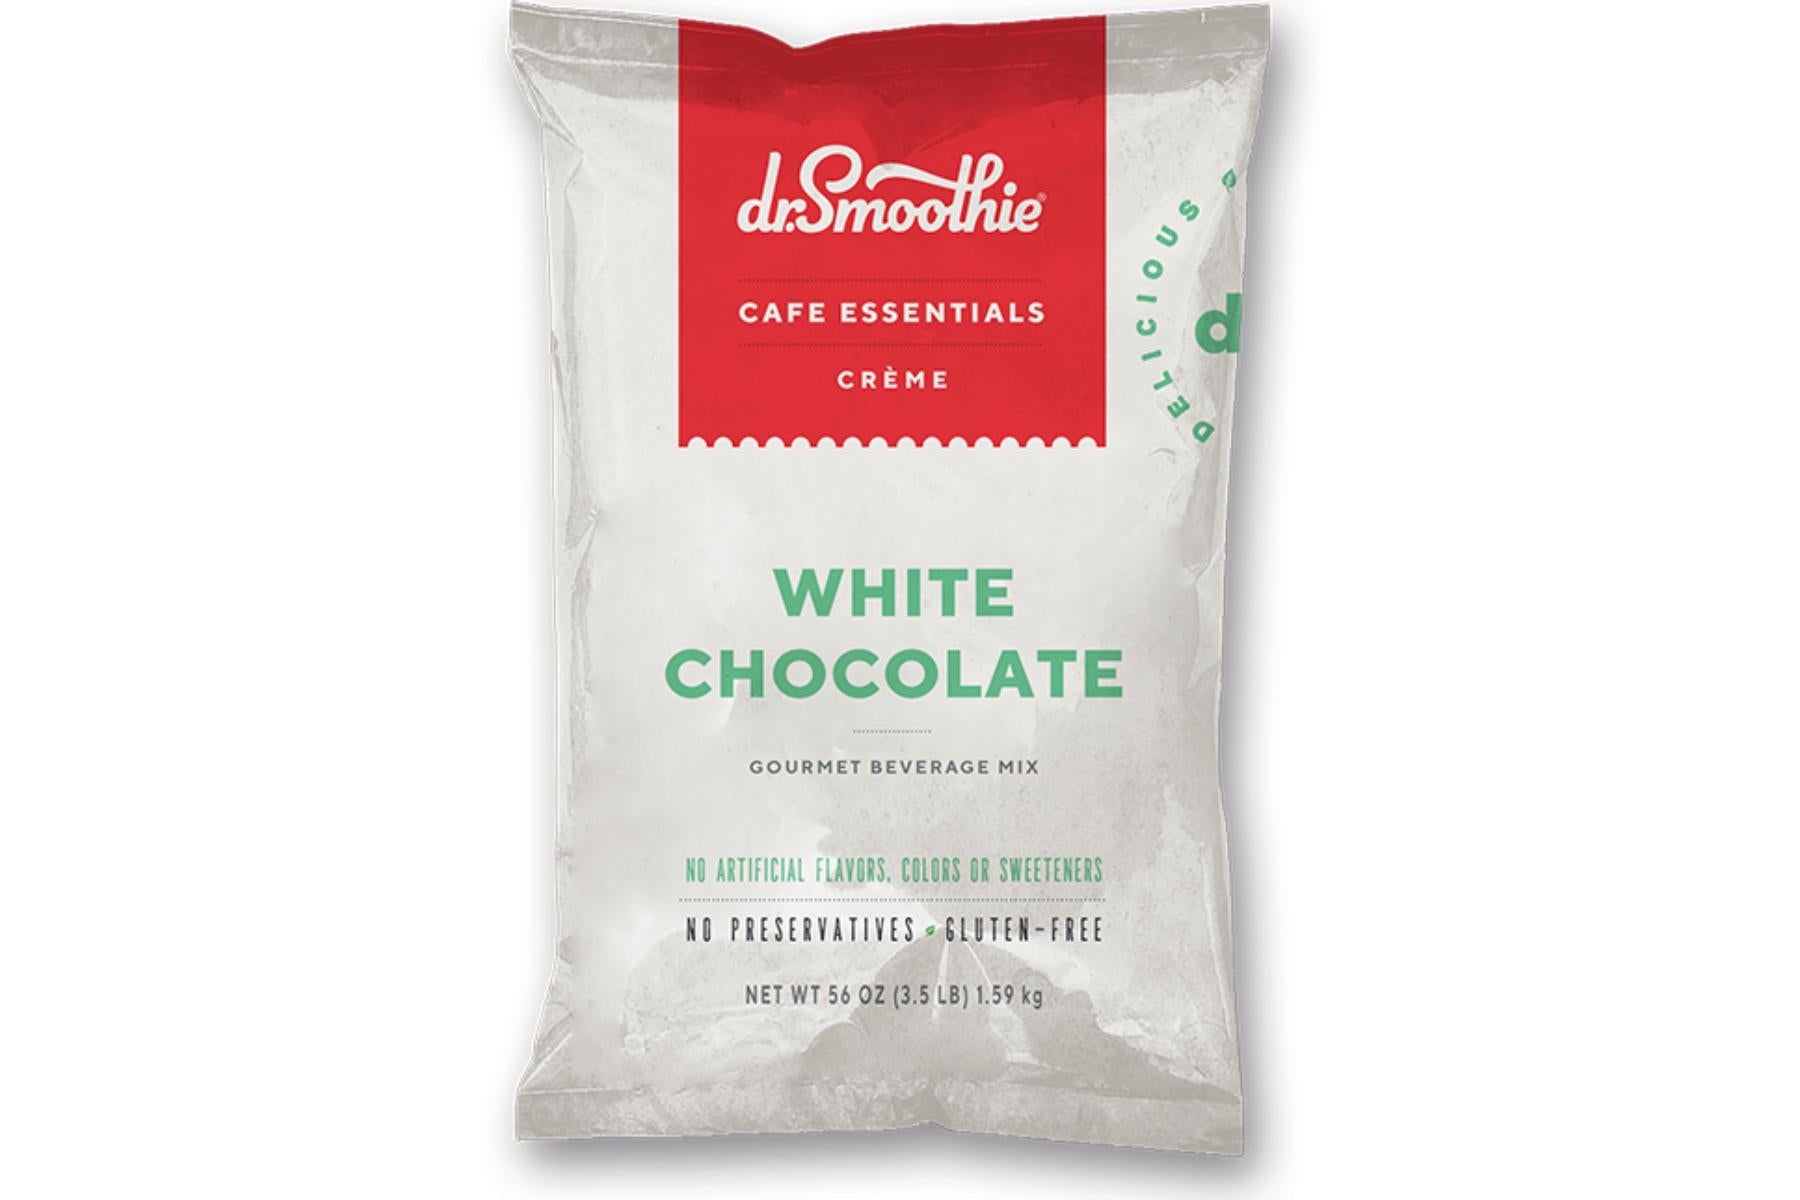 Dr. Smoothie Cafe Essentials Creme - 3.5lb Bulk Bag: White Chocolate